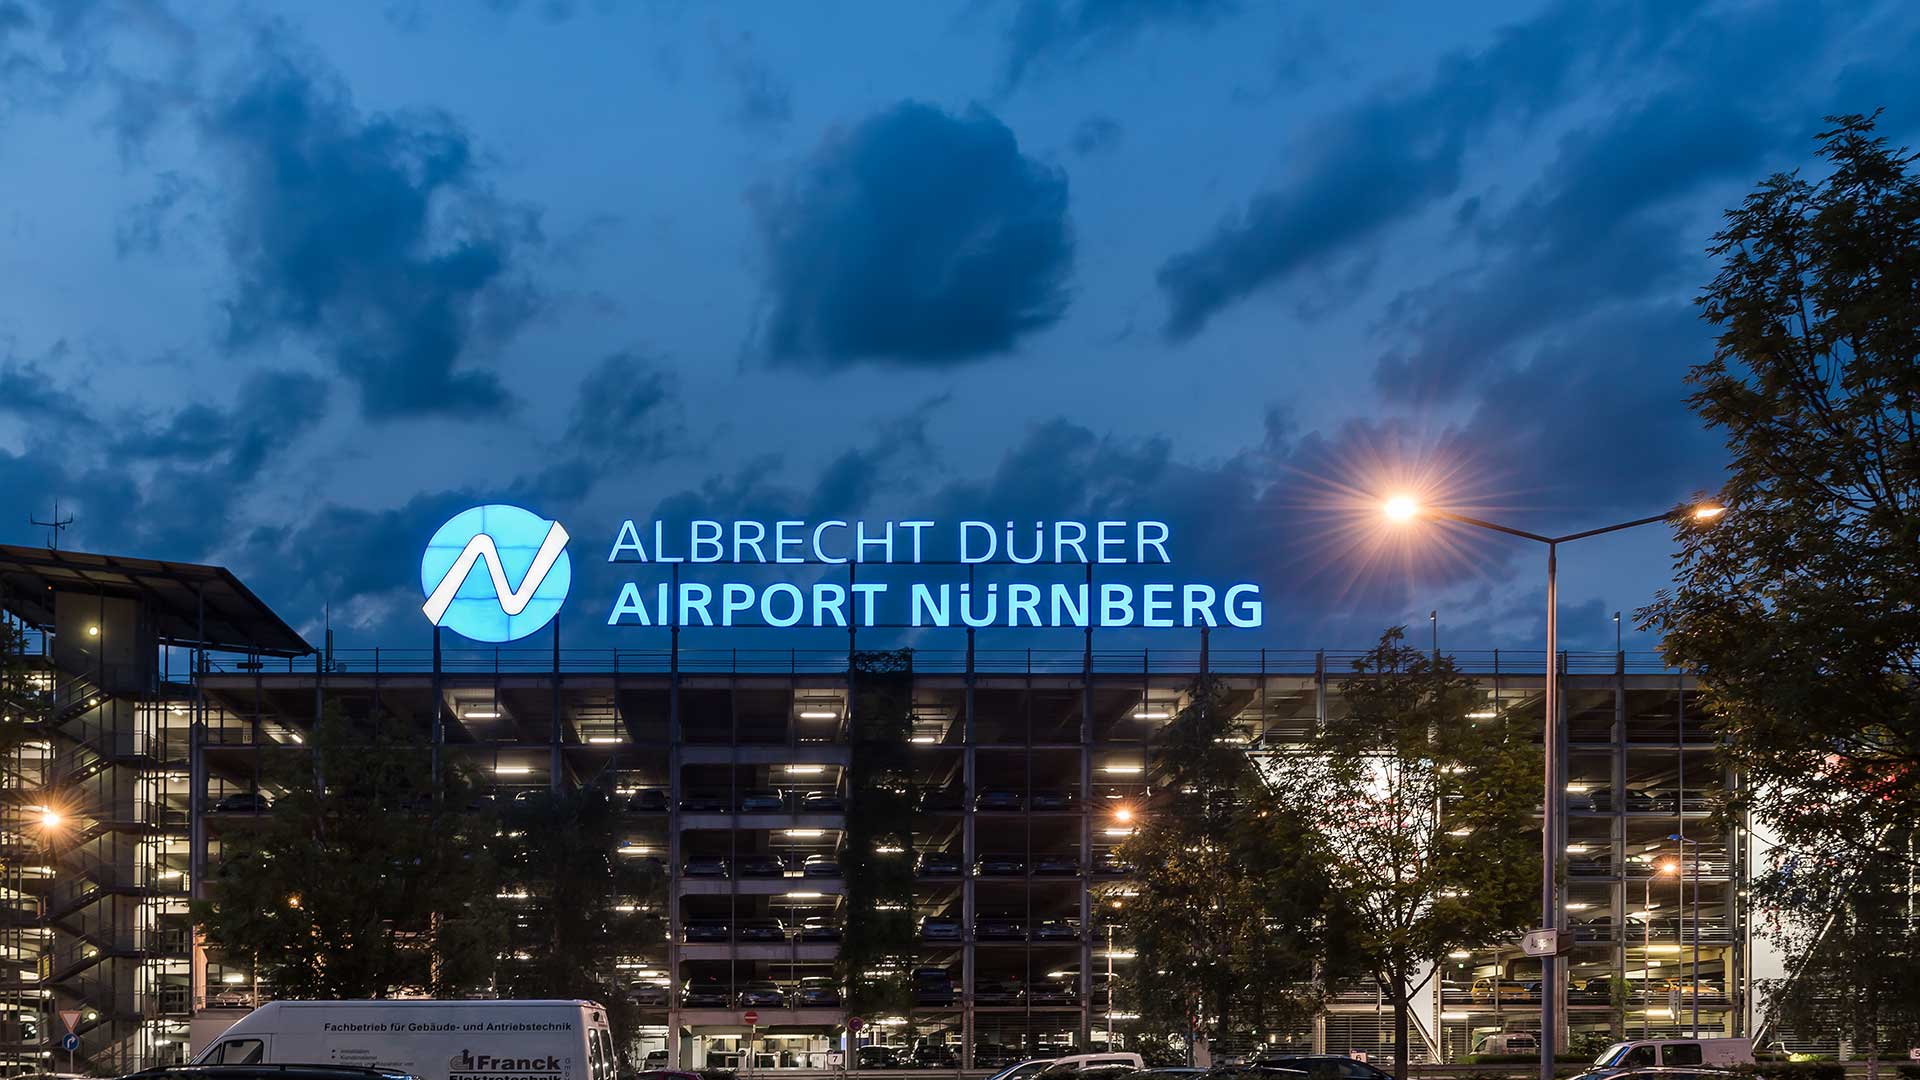 Nuremberg airport